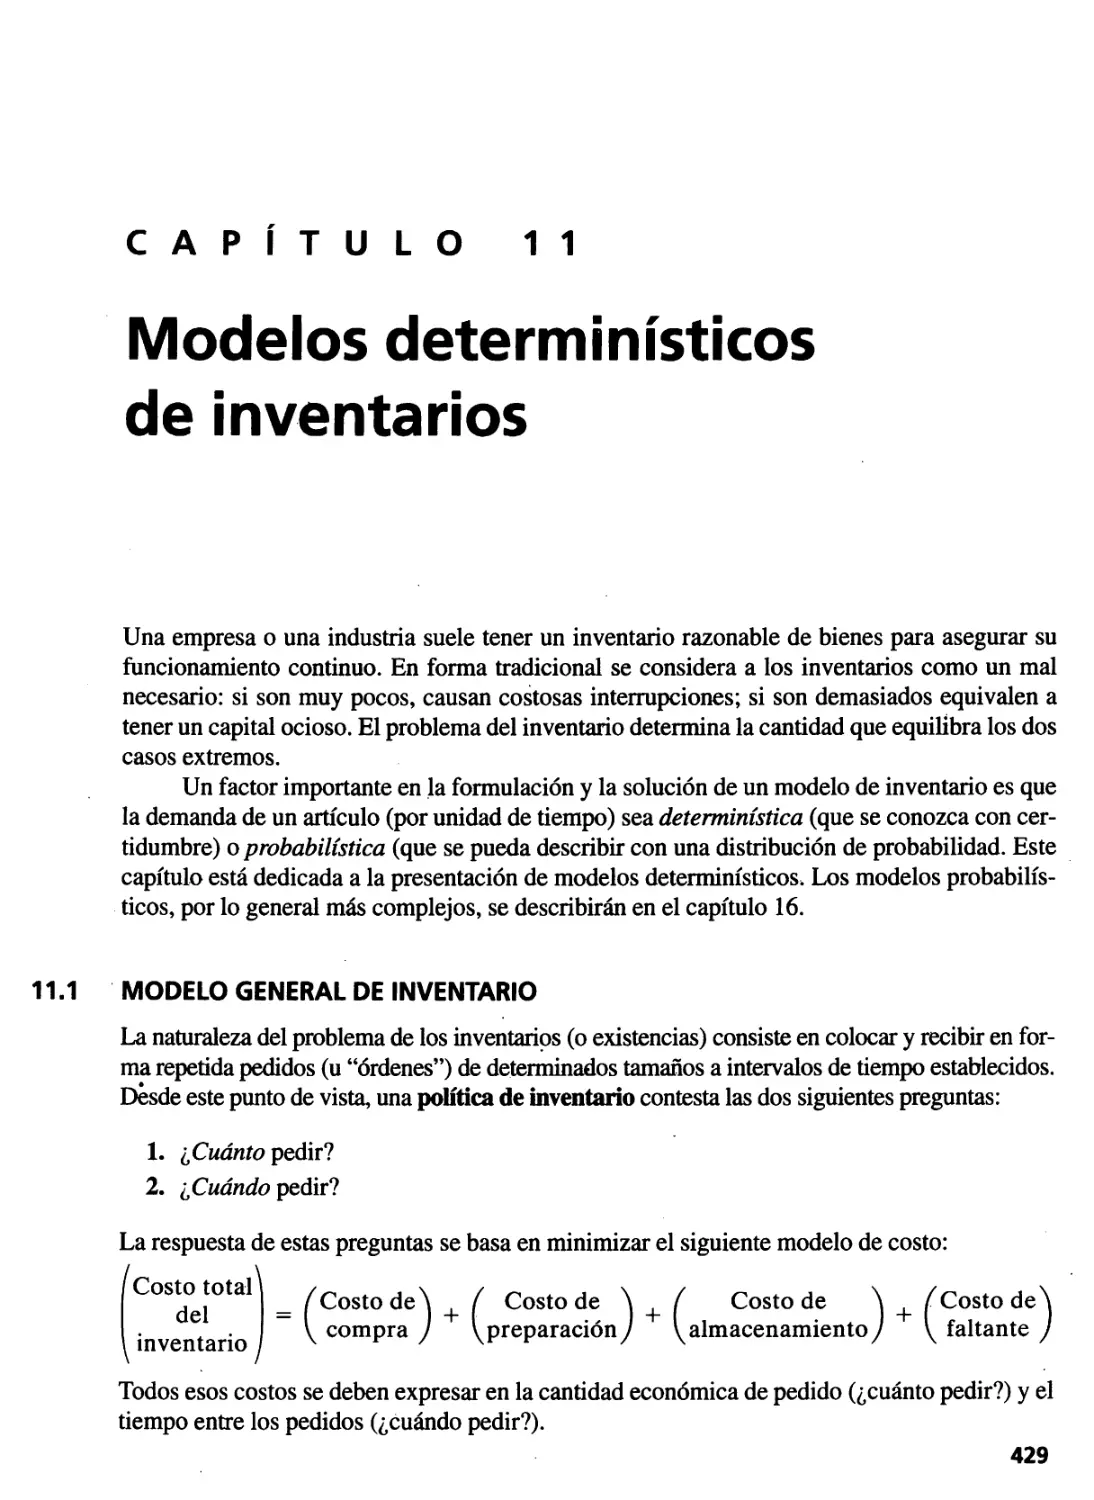 11. Modelos determinístcos de inventarios